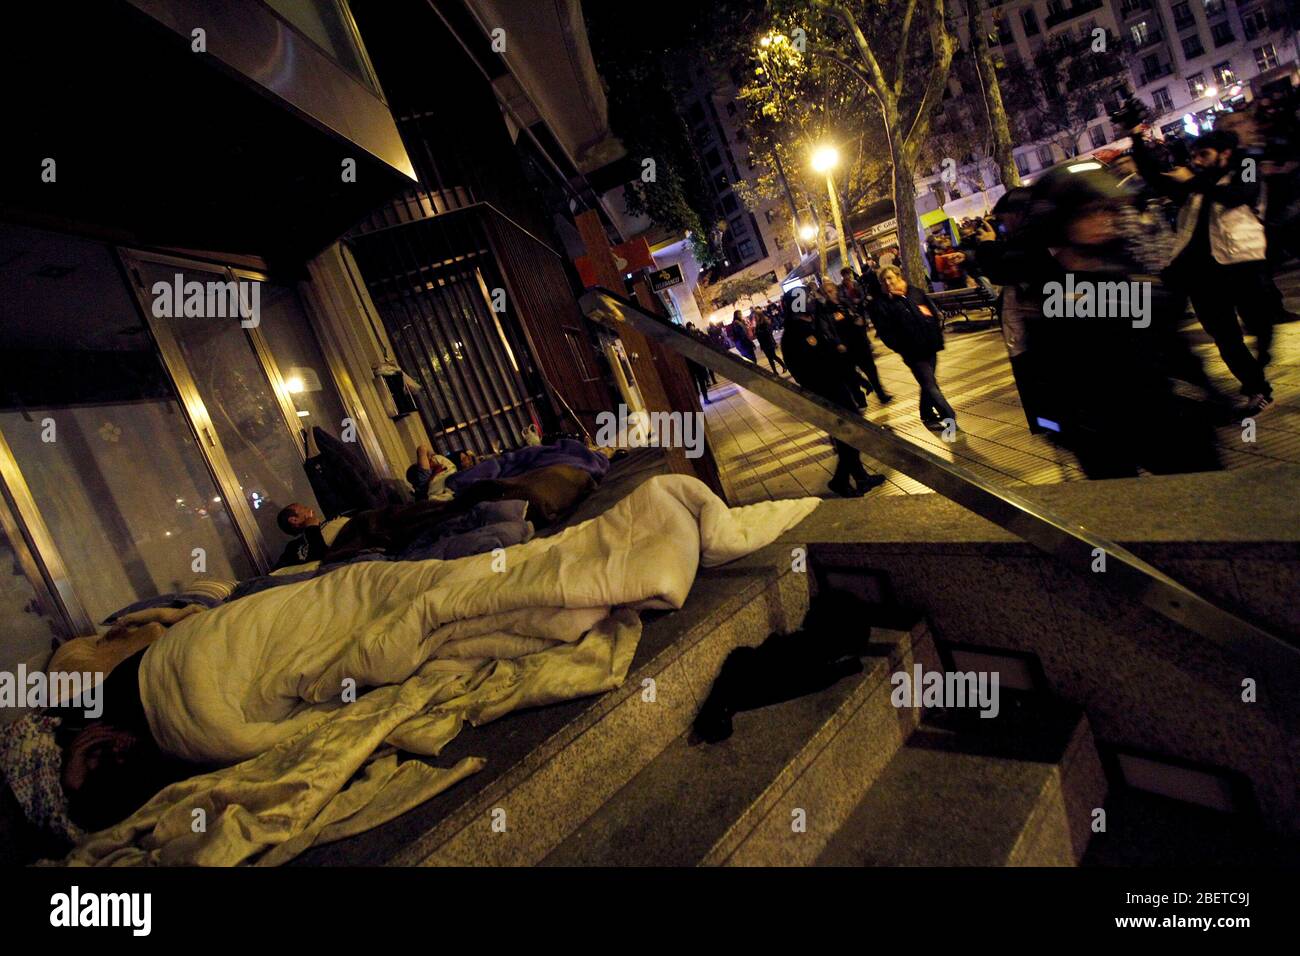 European General Strike.UN gruppo di senzatetto dormire in strada circondato da alcuni membri della polizia nazionale.novembre 14,2012. (ALTERPHOTOS/Carlo Foto Stock